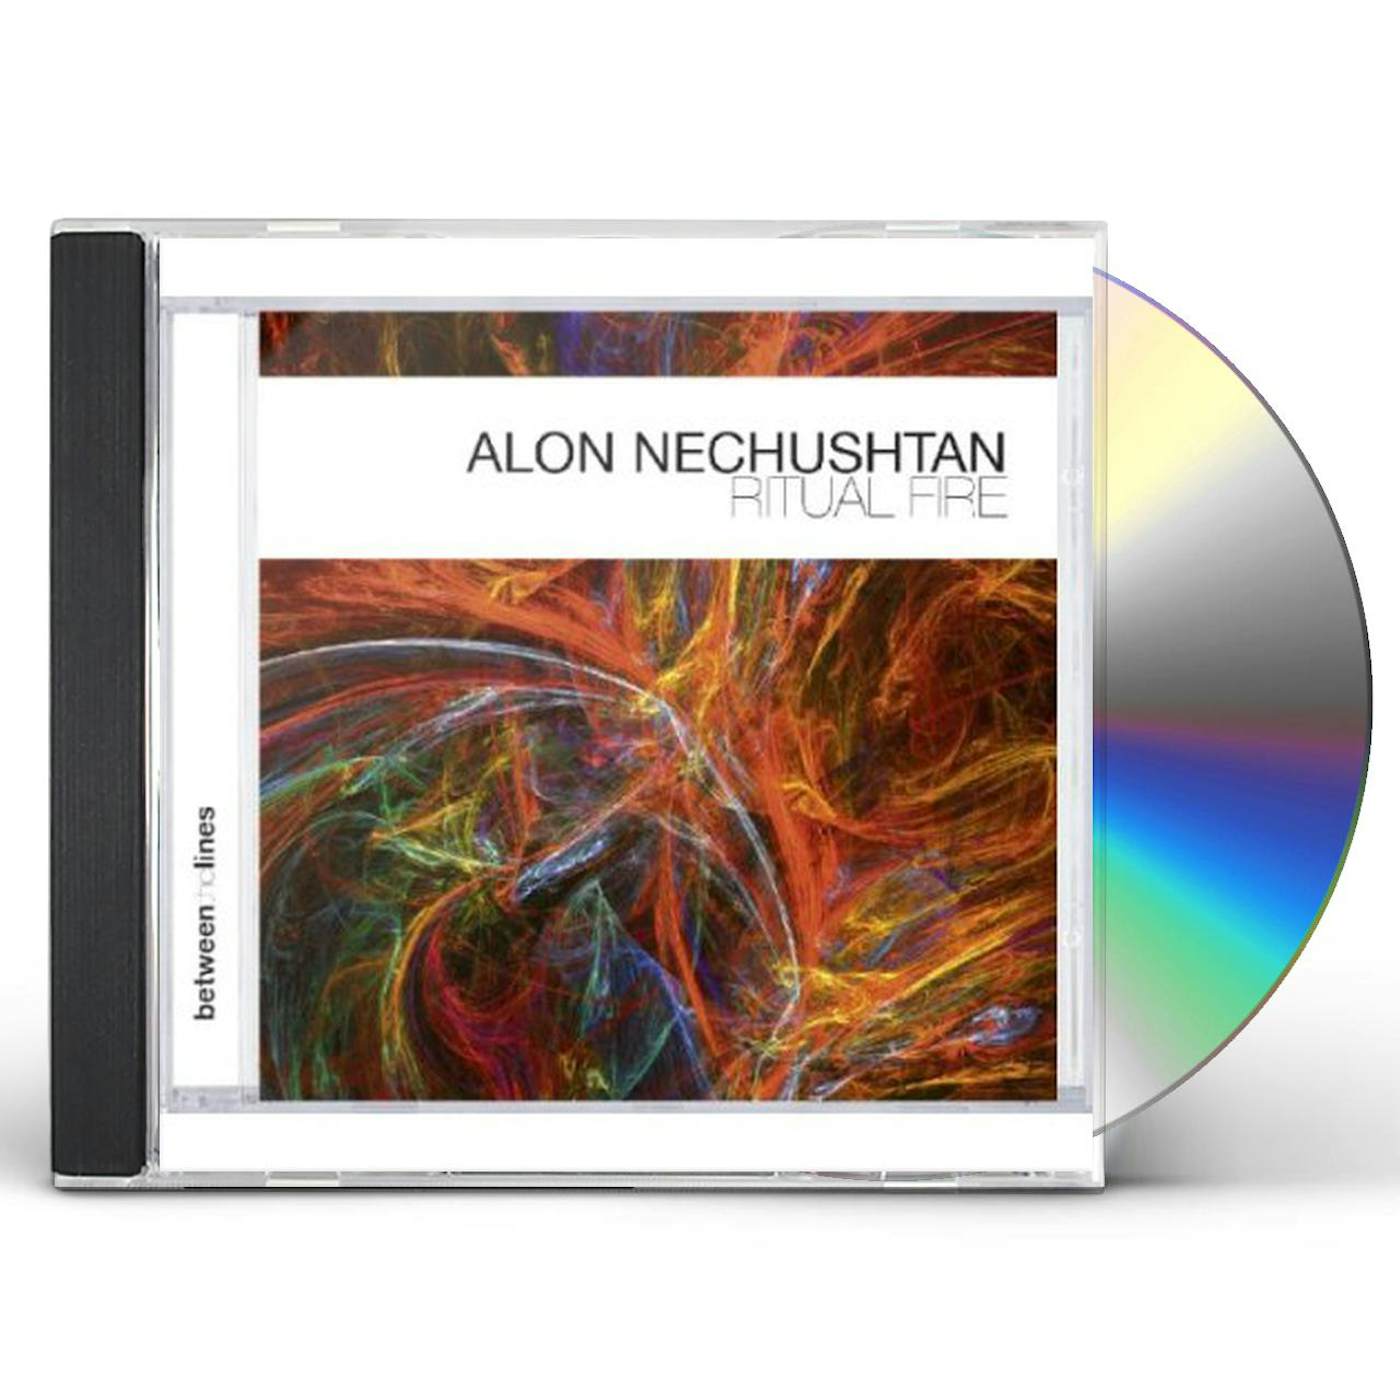 Alon Nechushtan RITUAL FIRE CD